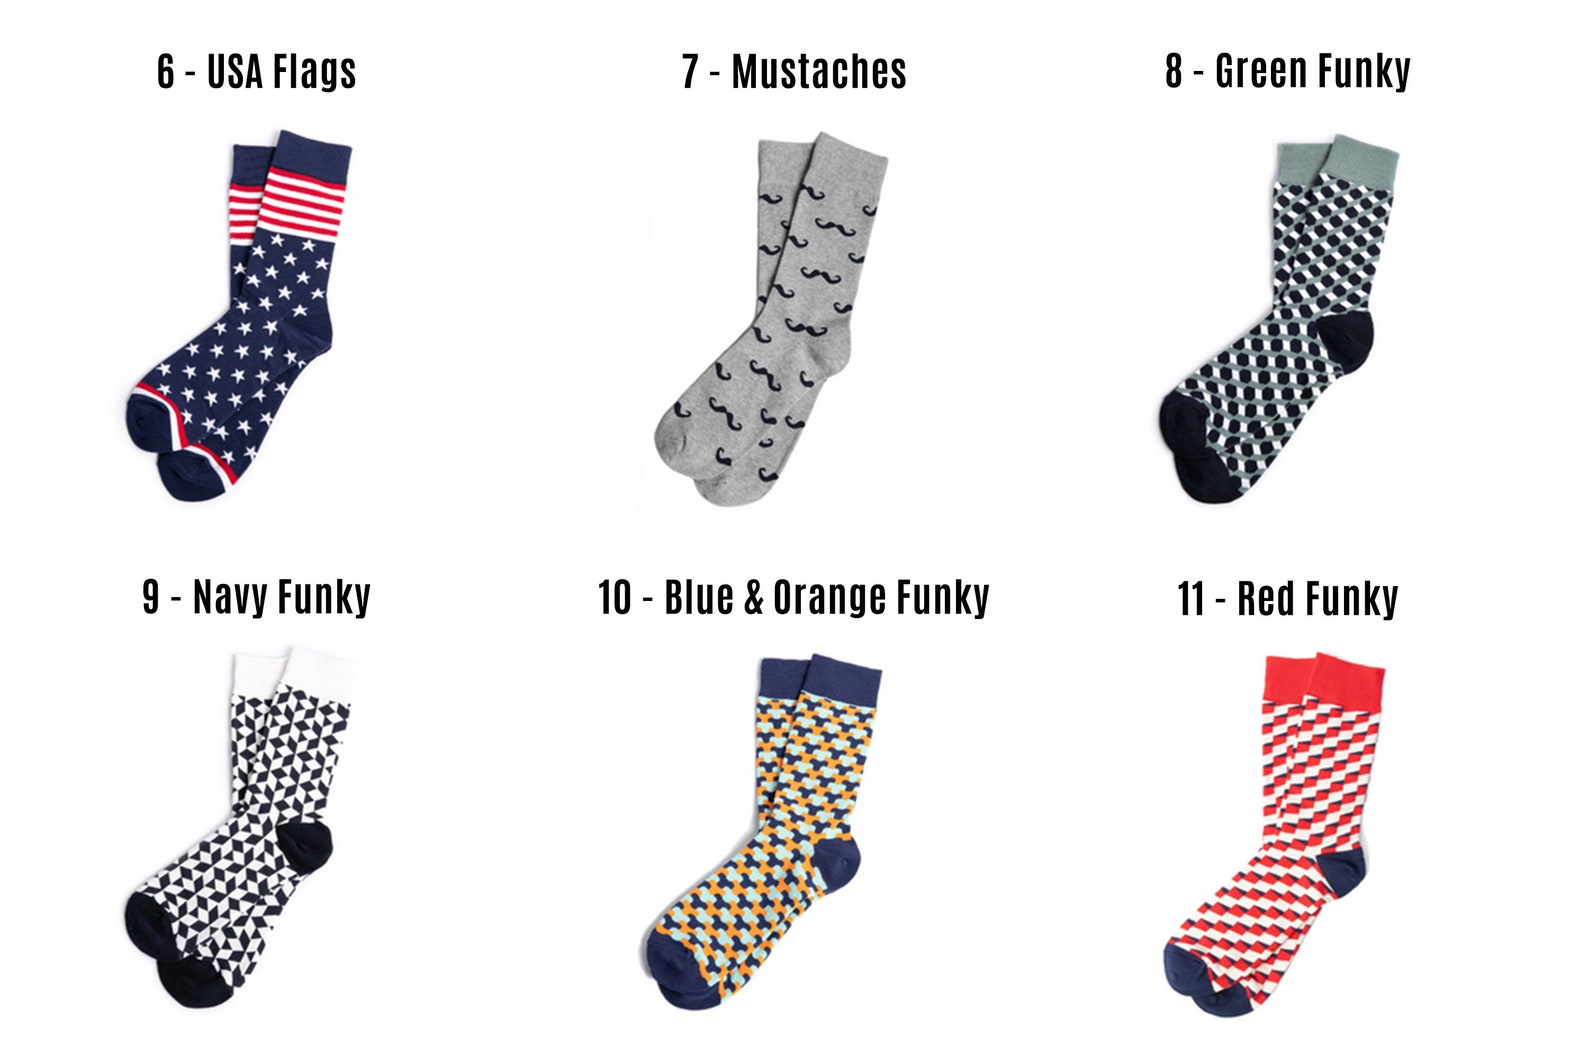 Custom Groomsmen Socks for Perfect Wedding Gift 17 Colors - Etsy